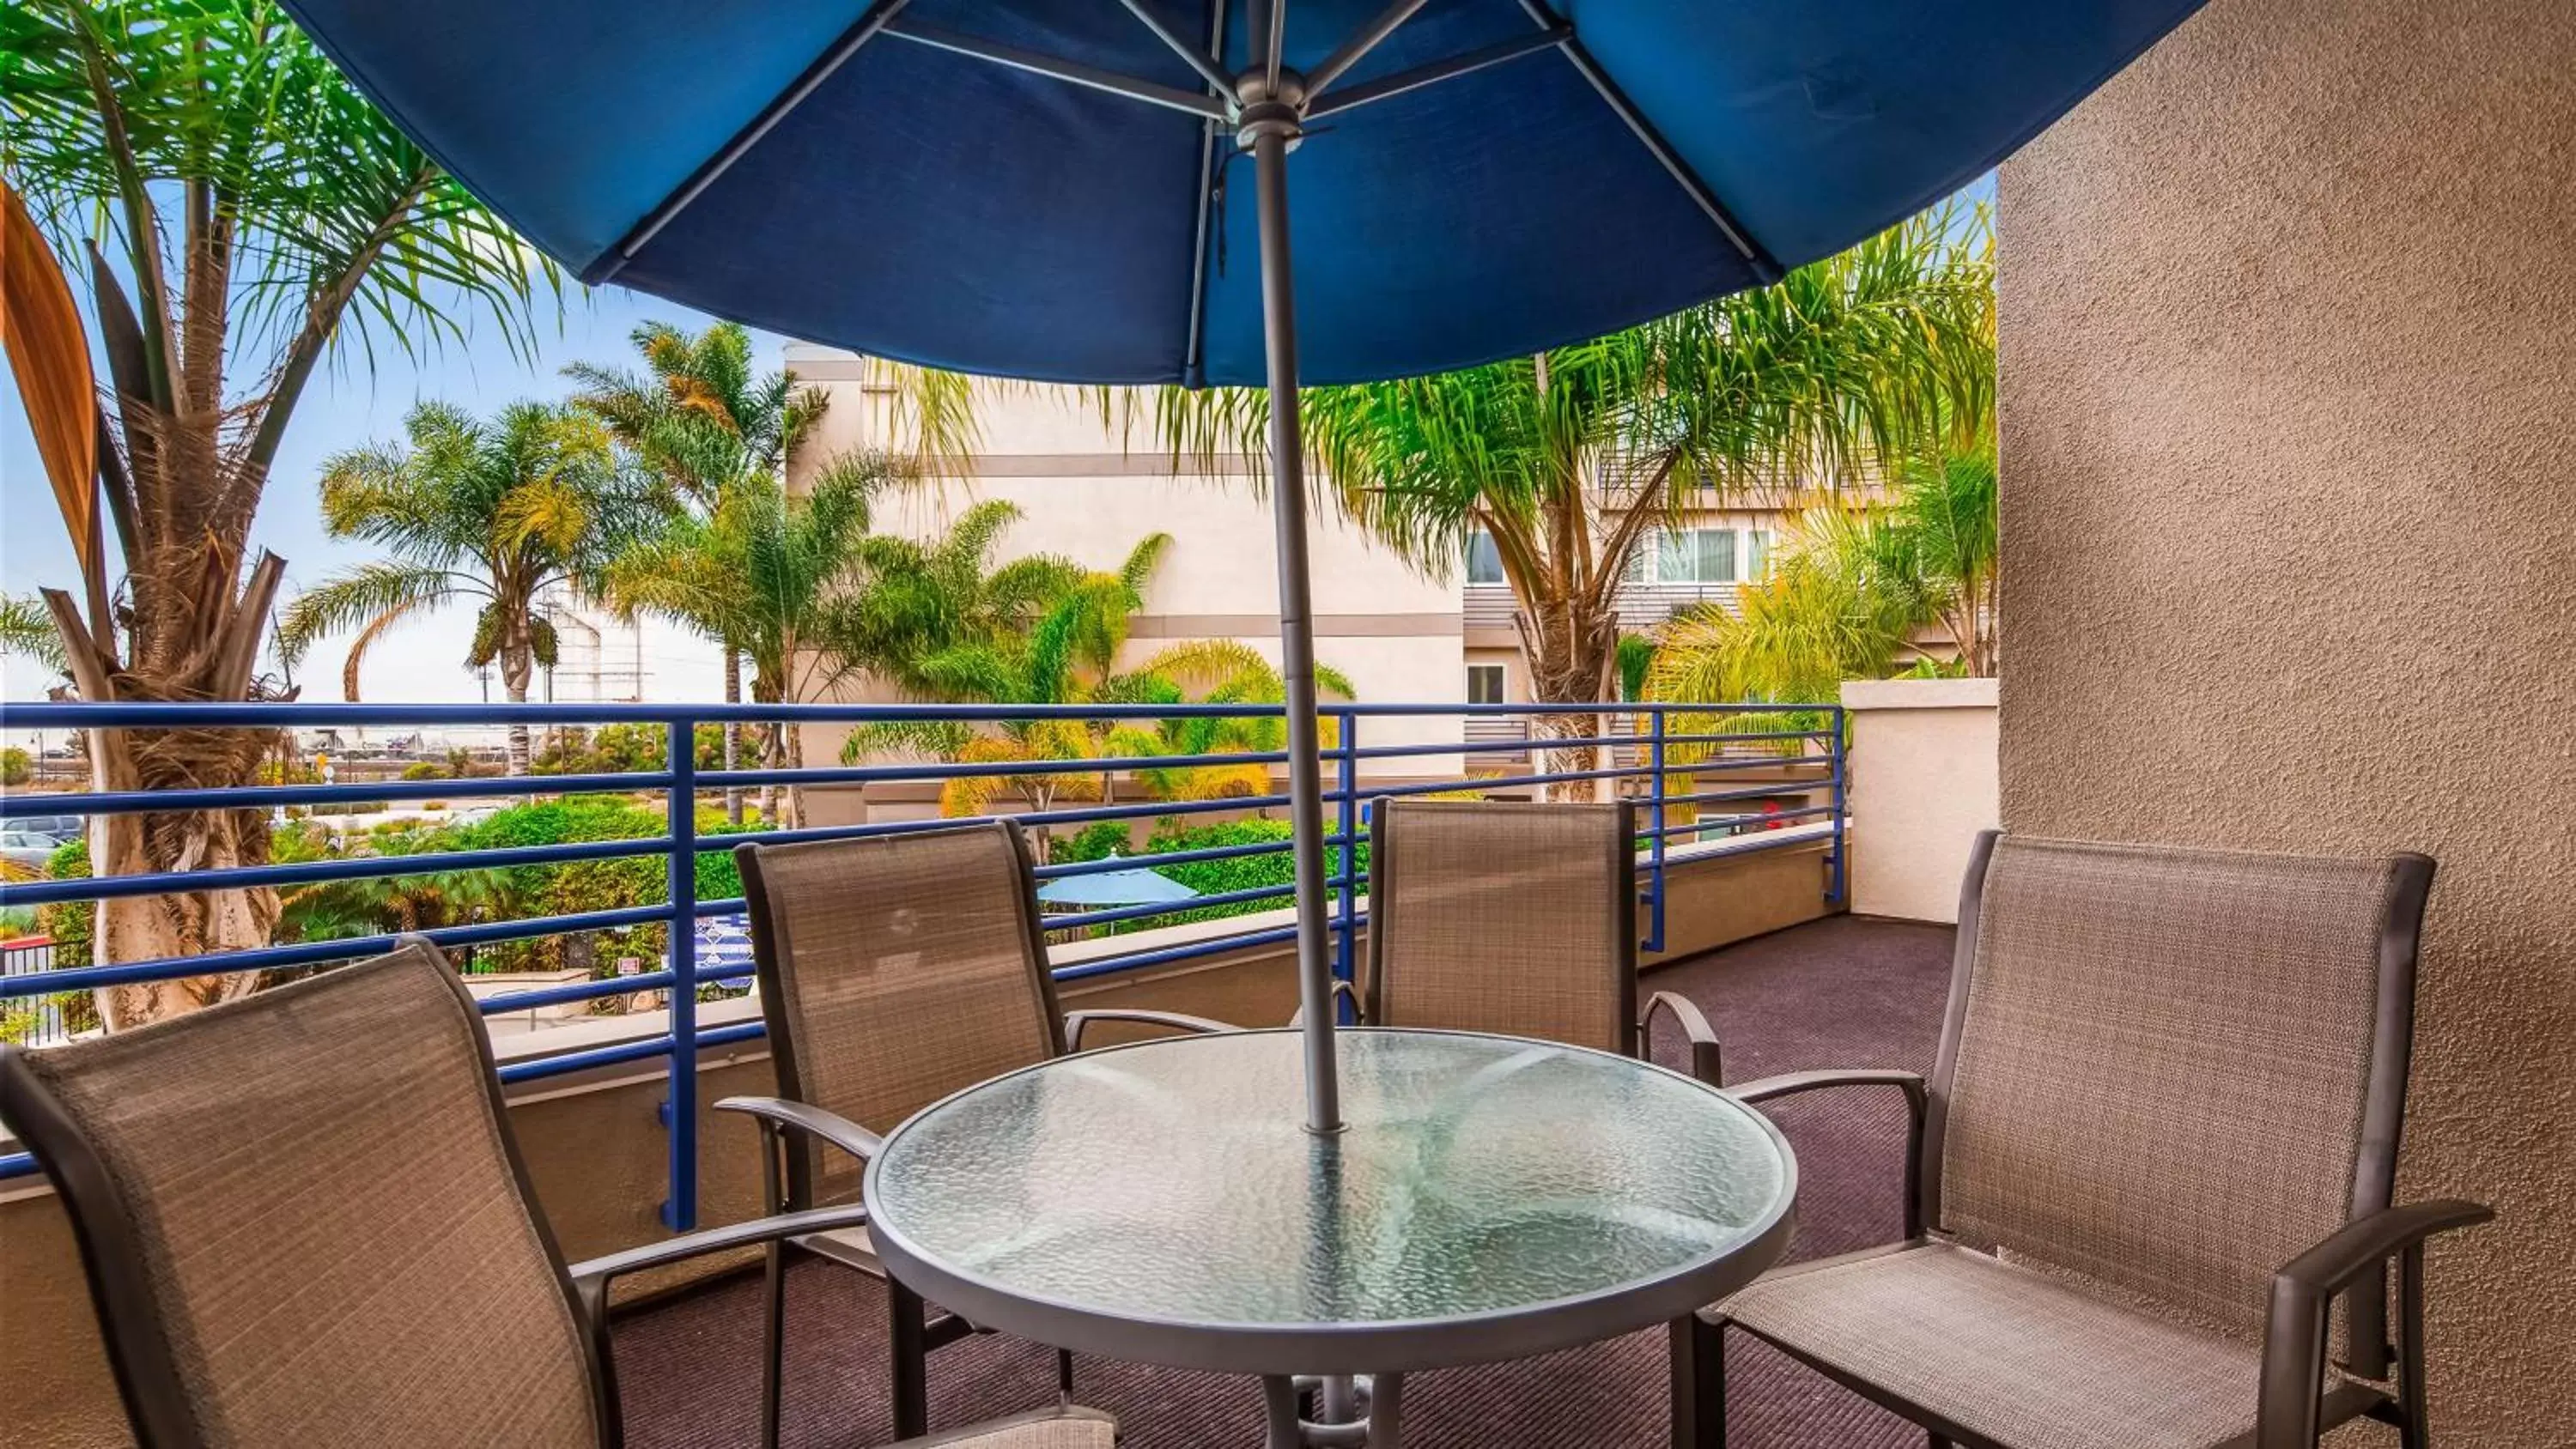 On site, Balcony/Terrace in Best Western Plus Marina Gateway Hotel